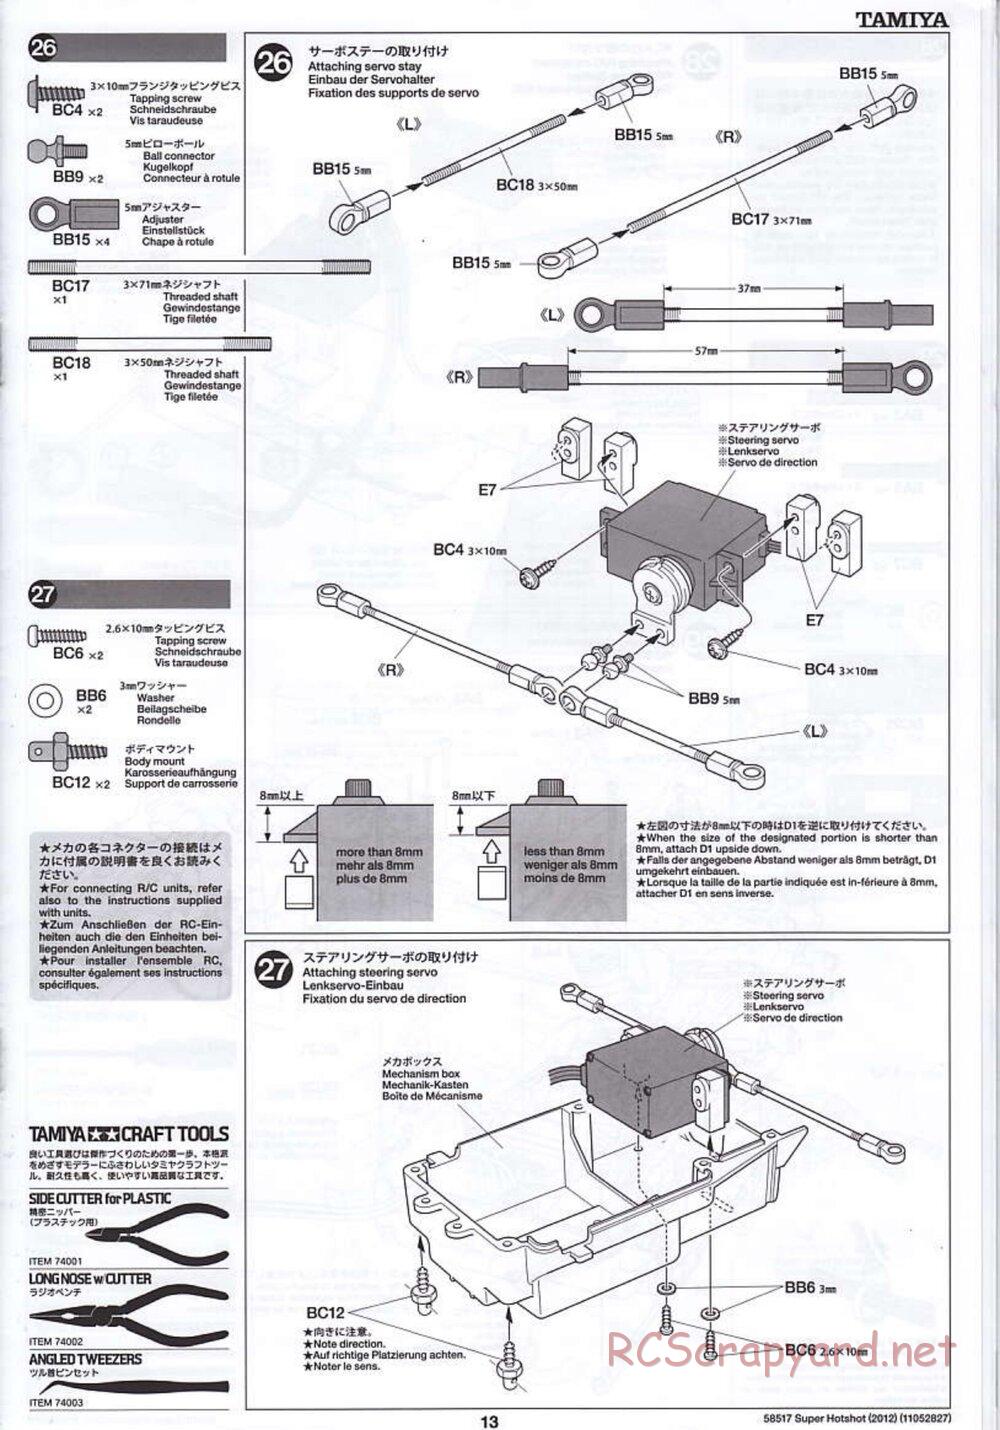 Tamiya - Super Hotshot 2012 - HS Chassis - Manual - Page 13